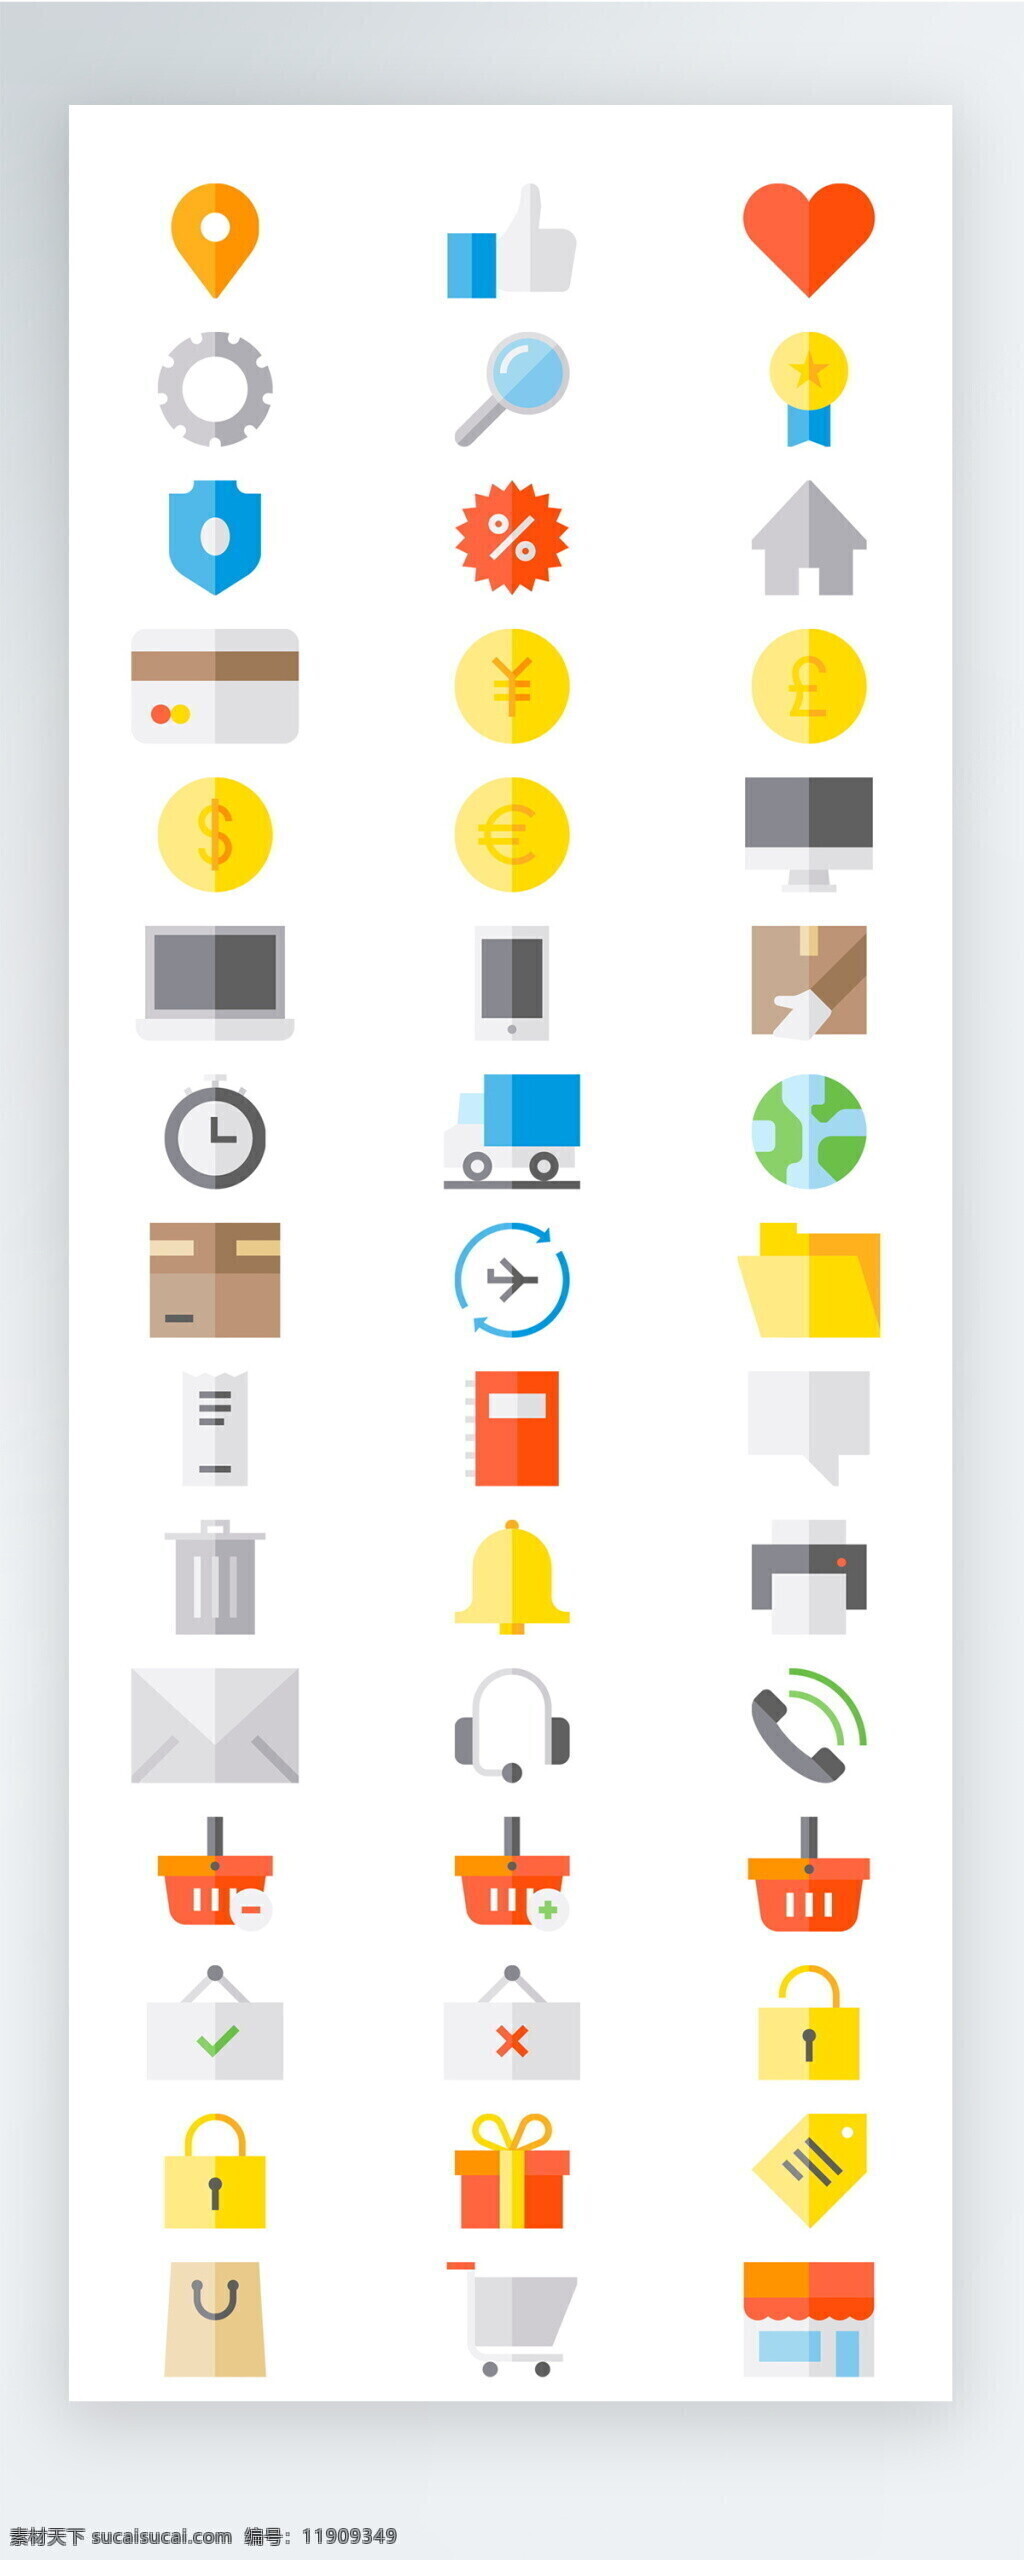 彩色 工作 生活 图标 矢量 icon icon图标 ui 手机 拟物 社交 交通 载具 人物 购物 工具 安保 娱乐